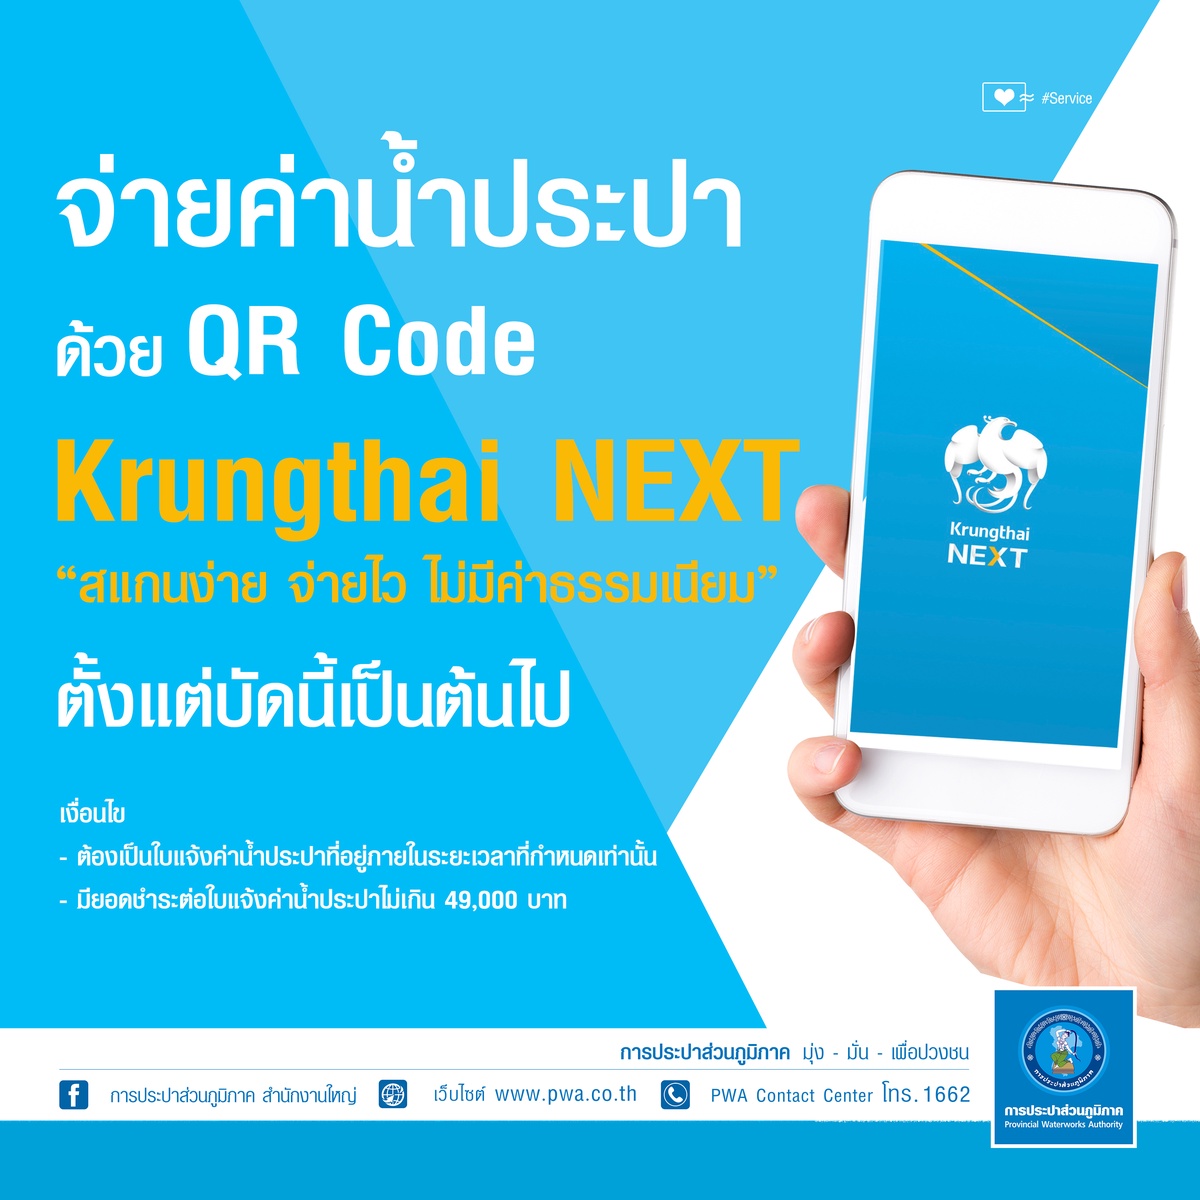 ลูกค้า กปภ. แสนสะดวก จ่ายค่าน้ำบนแอปฯ Krungthai NEXT ด้วย QR Code